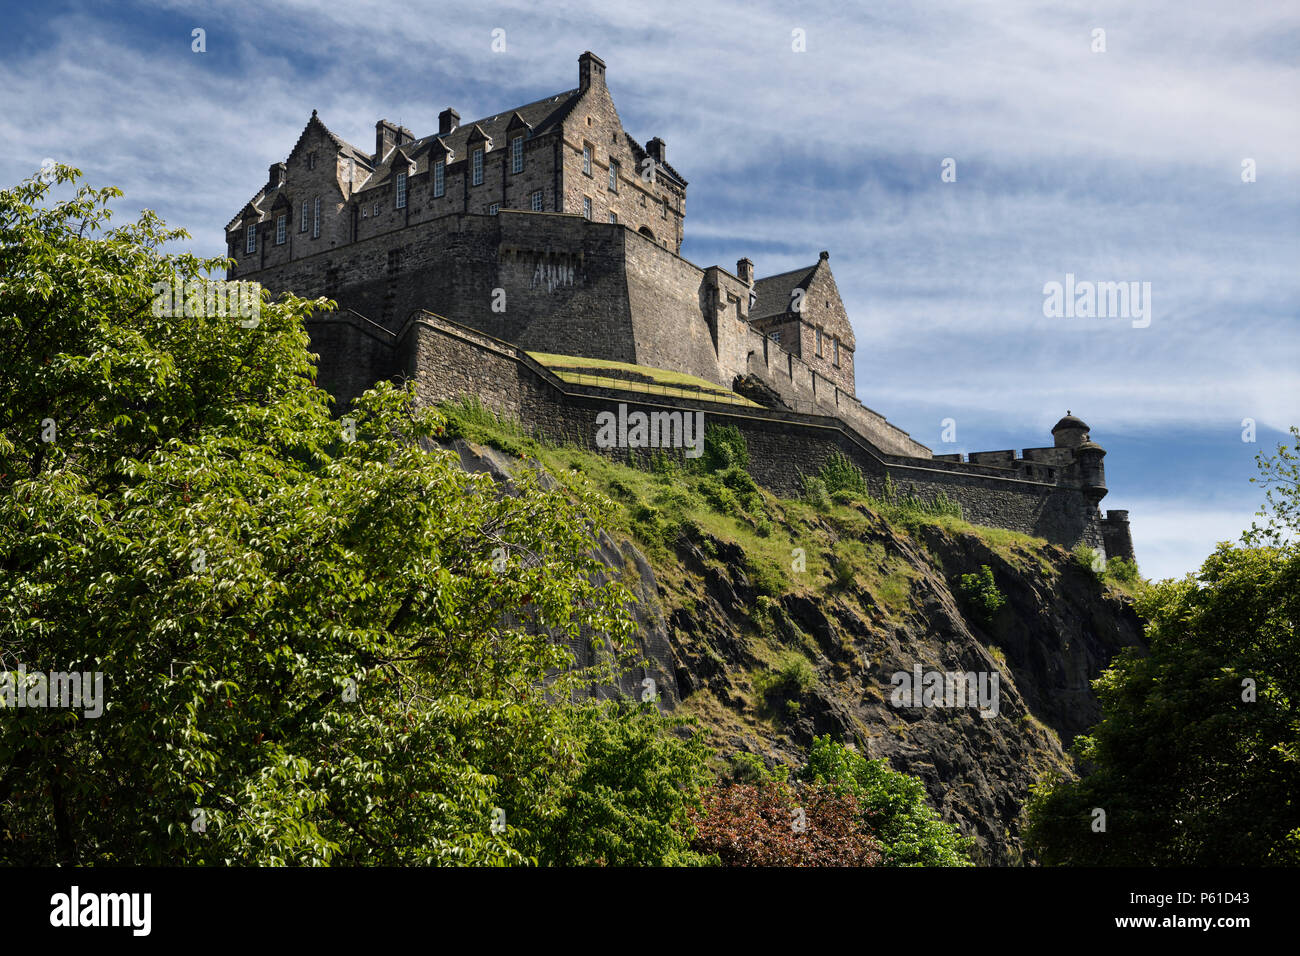 National War Museum von Edinburgh Castle Festung auf der vulkanischen Plug von Castle Rock in Edinburgh Hauptstadt von Schottland, Vereinigtes Königreich Stockfoto